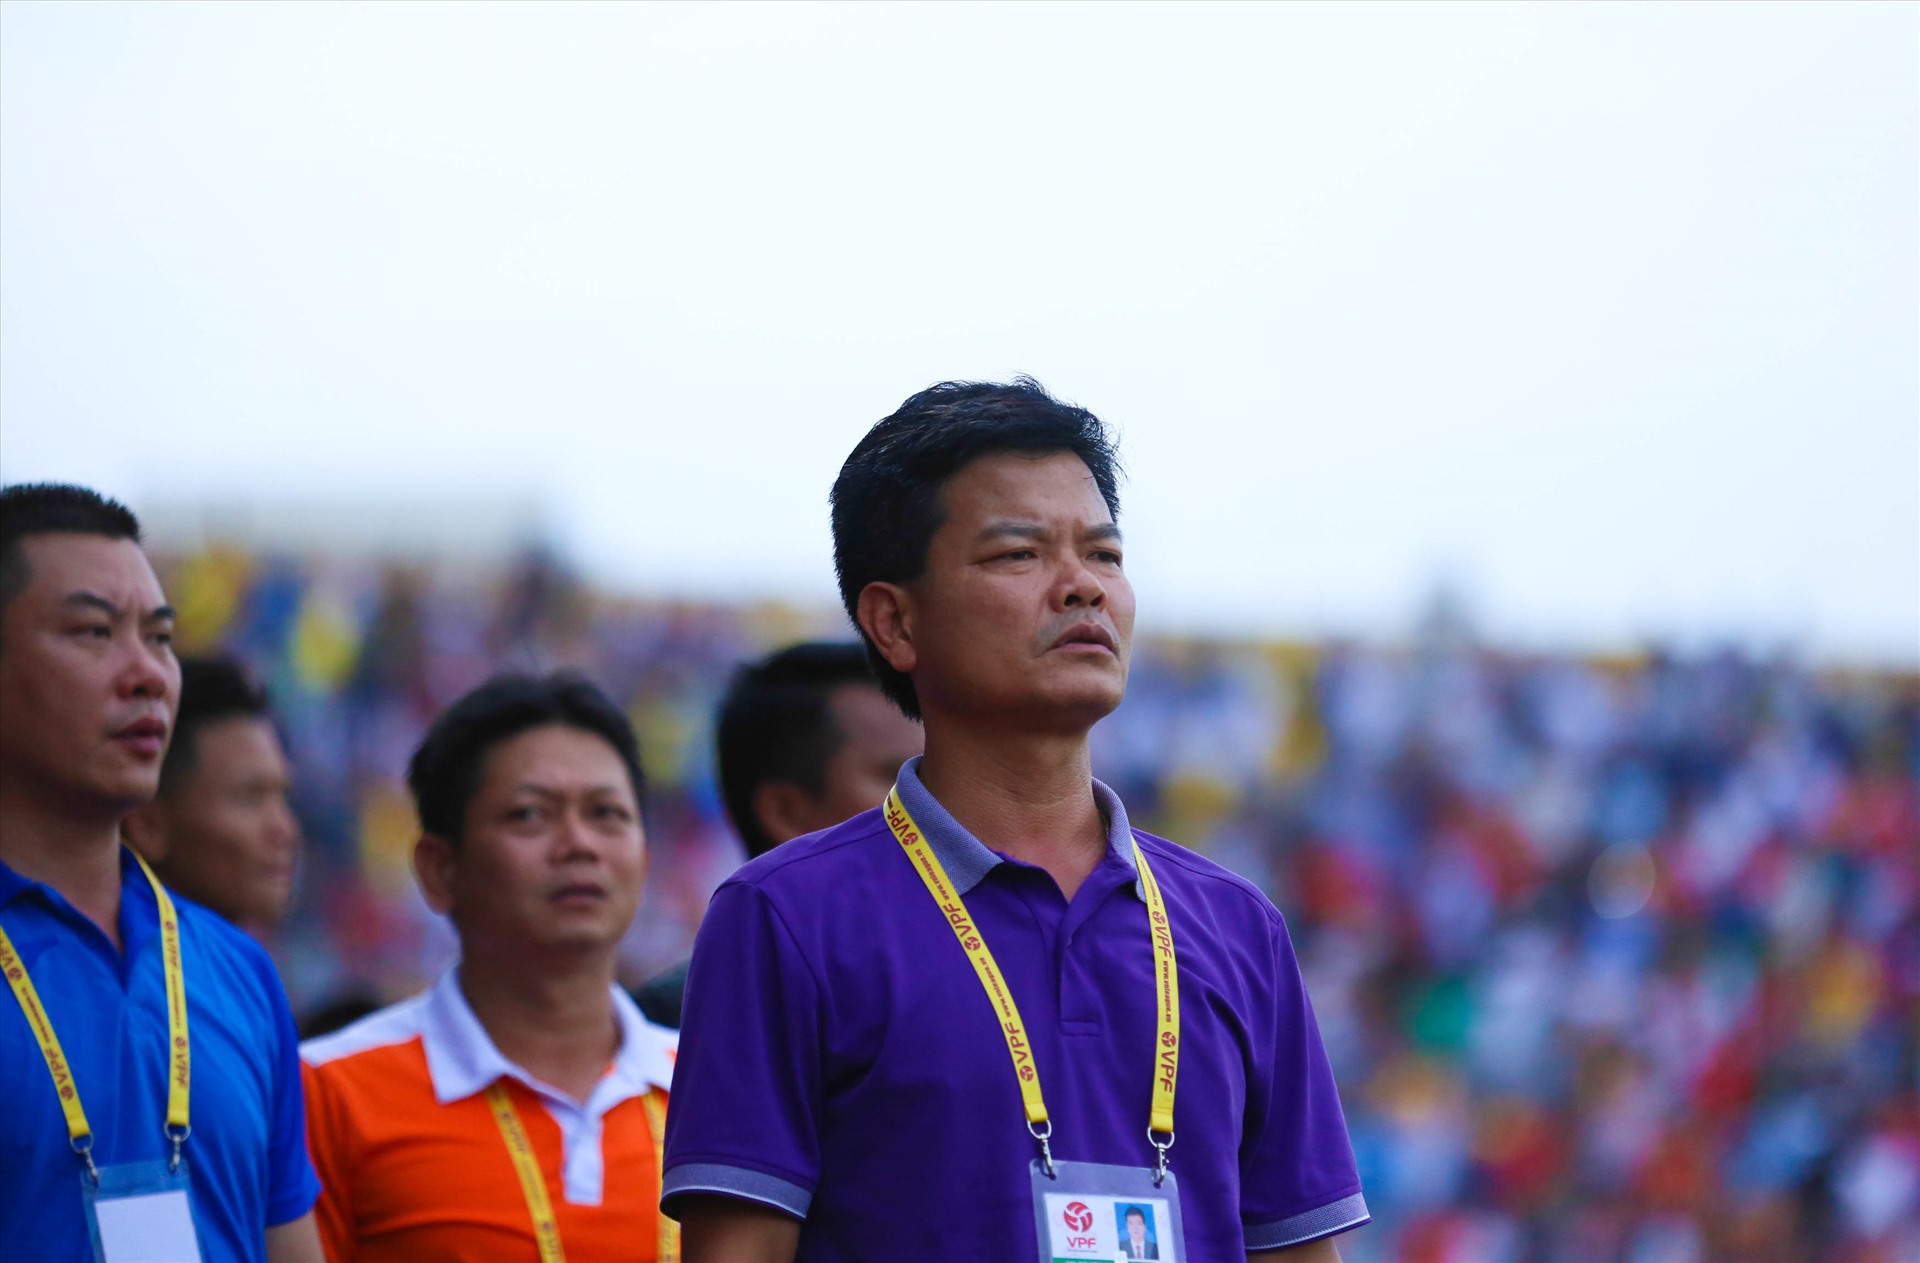 Huấn luyện viên Nguyễn Văn Sỹ cho rằng VPF cần có phương án tốt hơn để tìm được sự đồng thuận từ phía các đội bóng. Ảnh: HOÀI THU